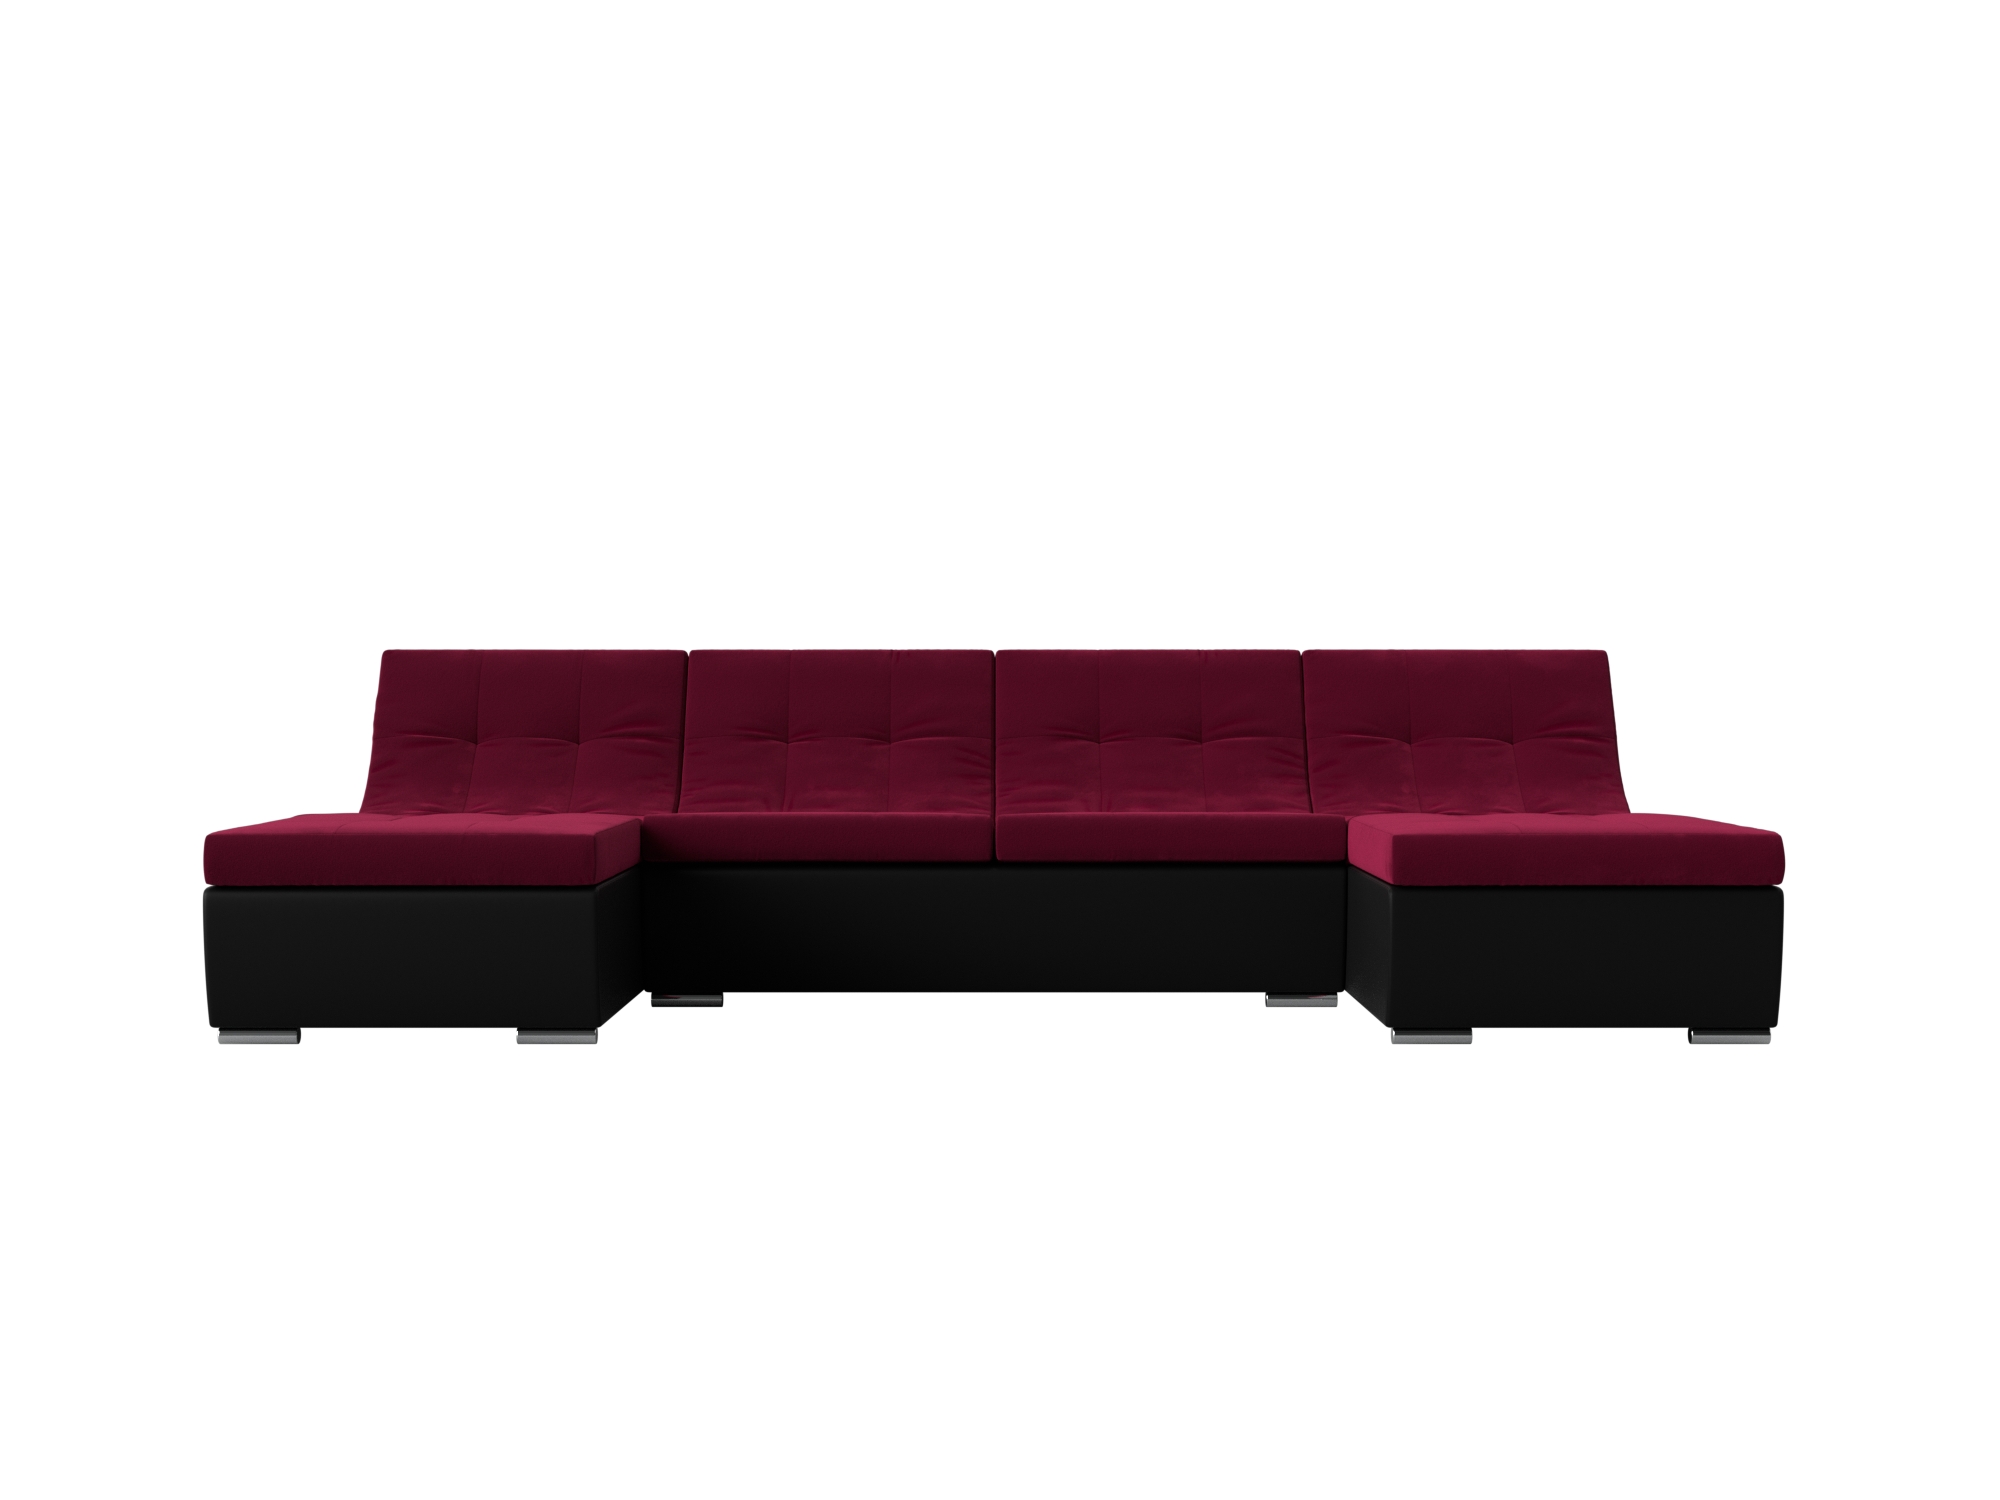 П-образный модульный диван Монреаль MebelVia Красный, Черный, Микровельвет, Экокожа, ЛДСП п образный модульный диван монреаль mebelvia черный микровельвет экокожа лдсп